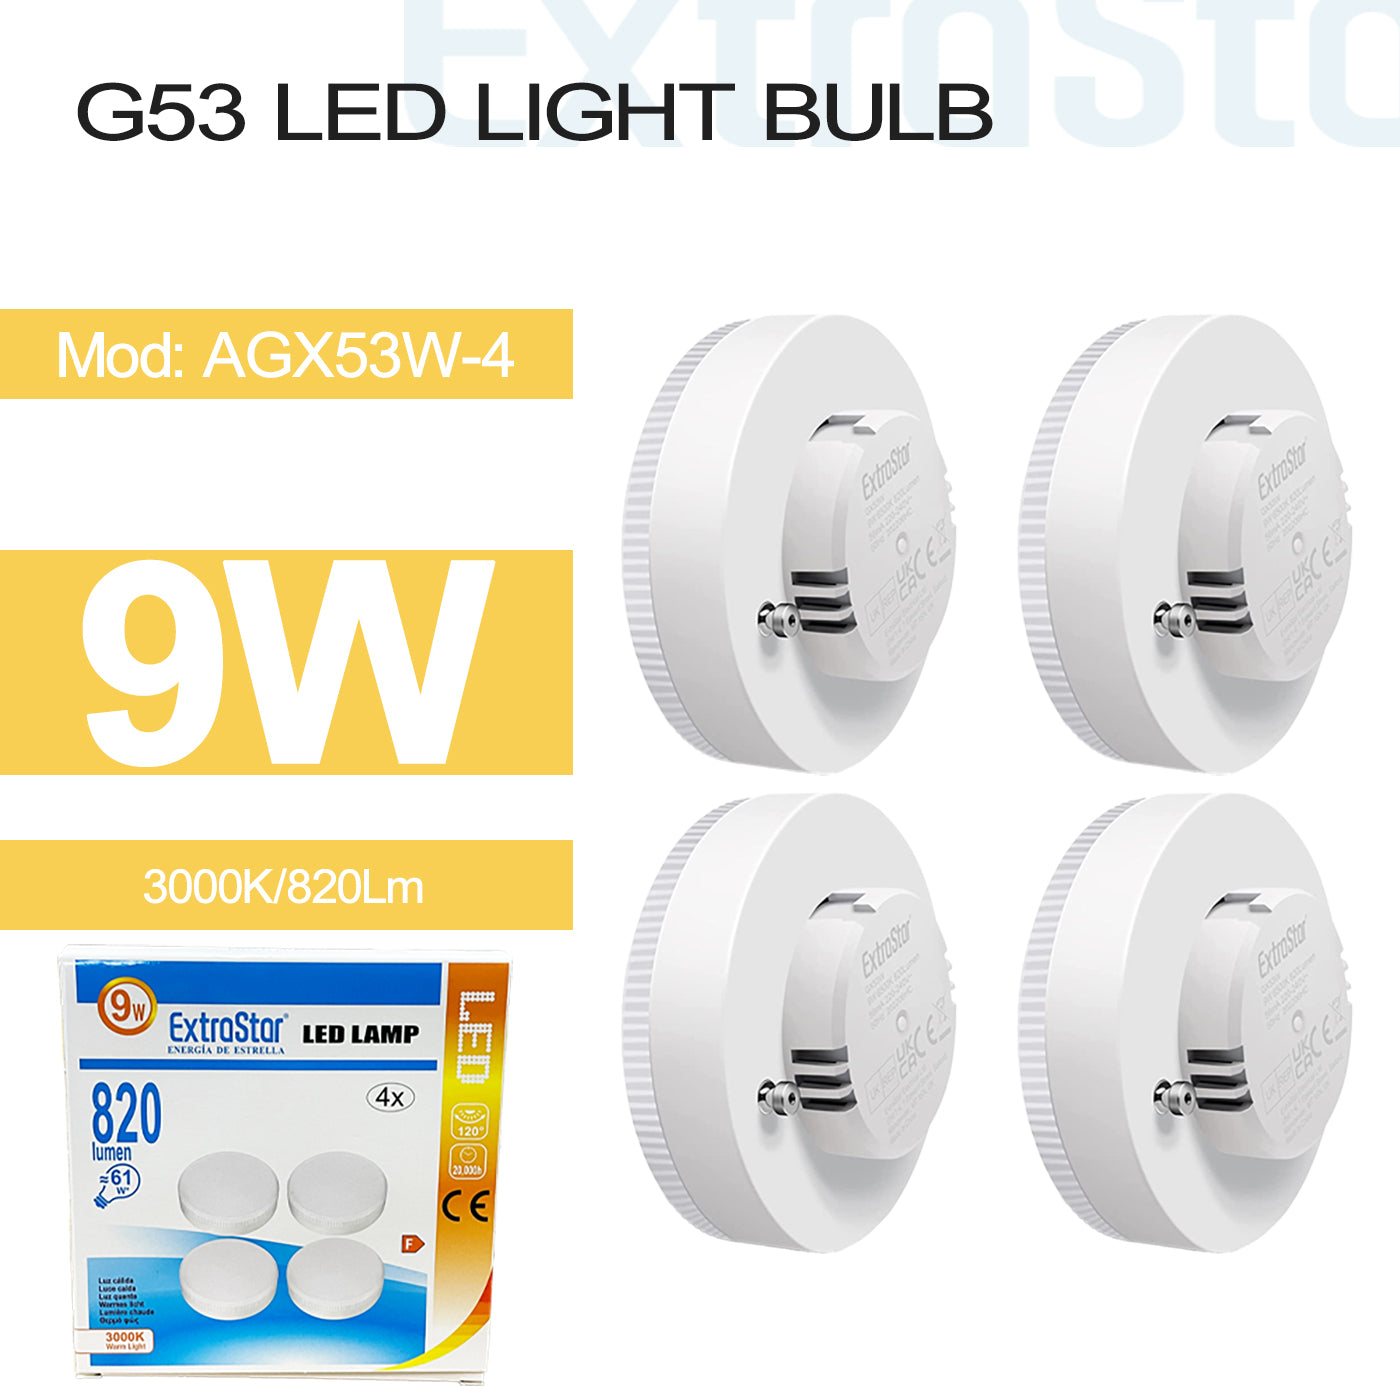 9W G53 LED Light Bulb, 3000K Pack of 4 (AGX53W-4)